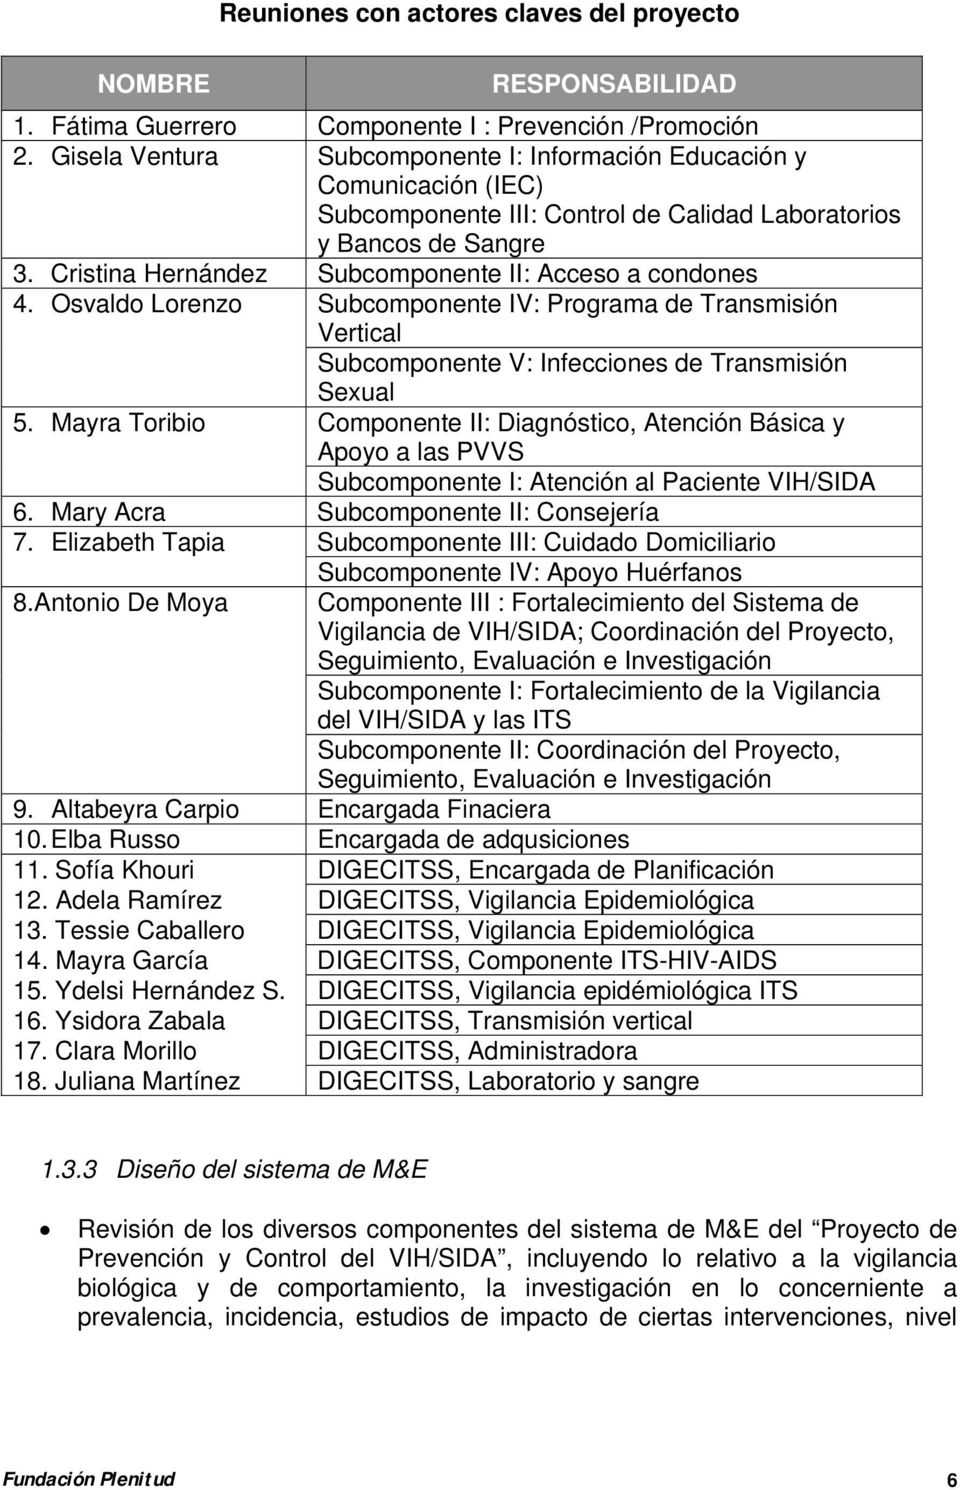 Cristina Hernández Subcomponente II: Acceso a condones 4. Osvaldo Lorenzo Subcomponente IV: Programa de Transmisión Vertical Subcomponente V: Infecciones de Transmisión Sexual 5.